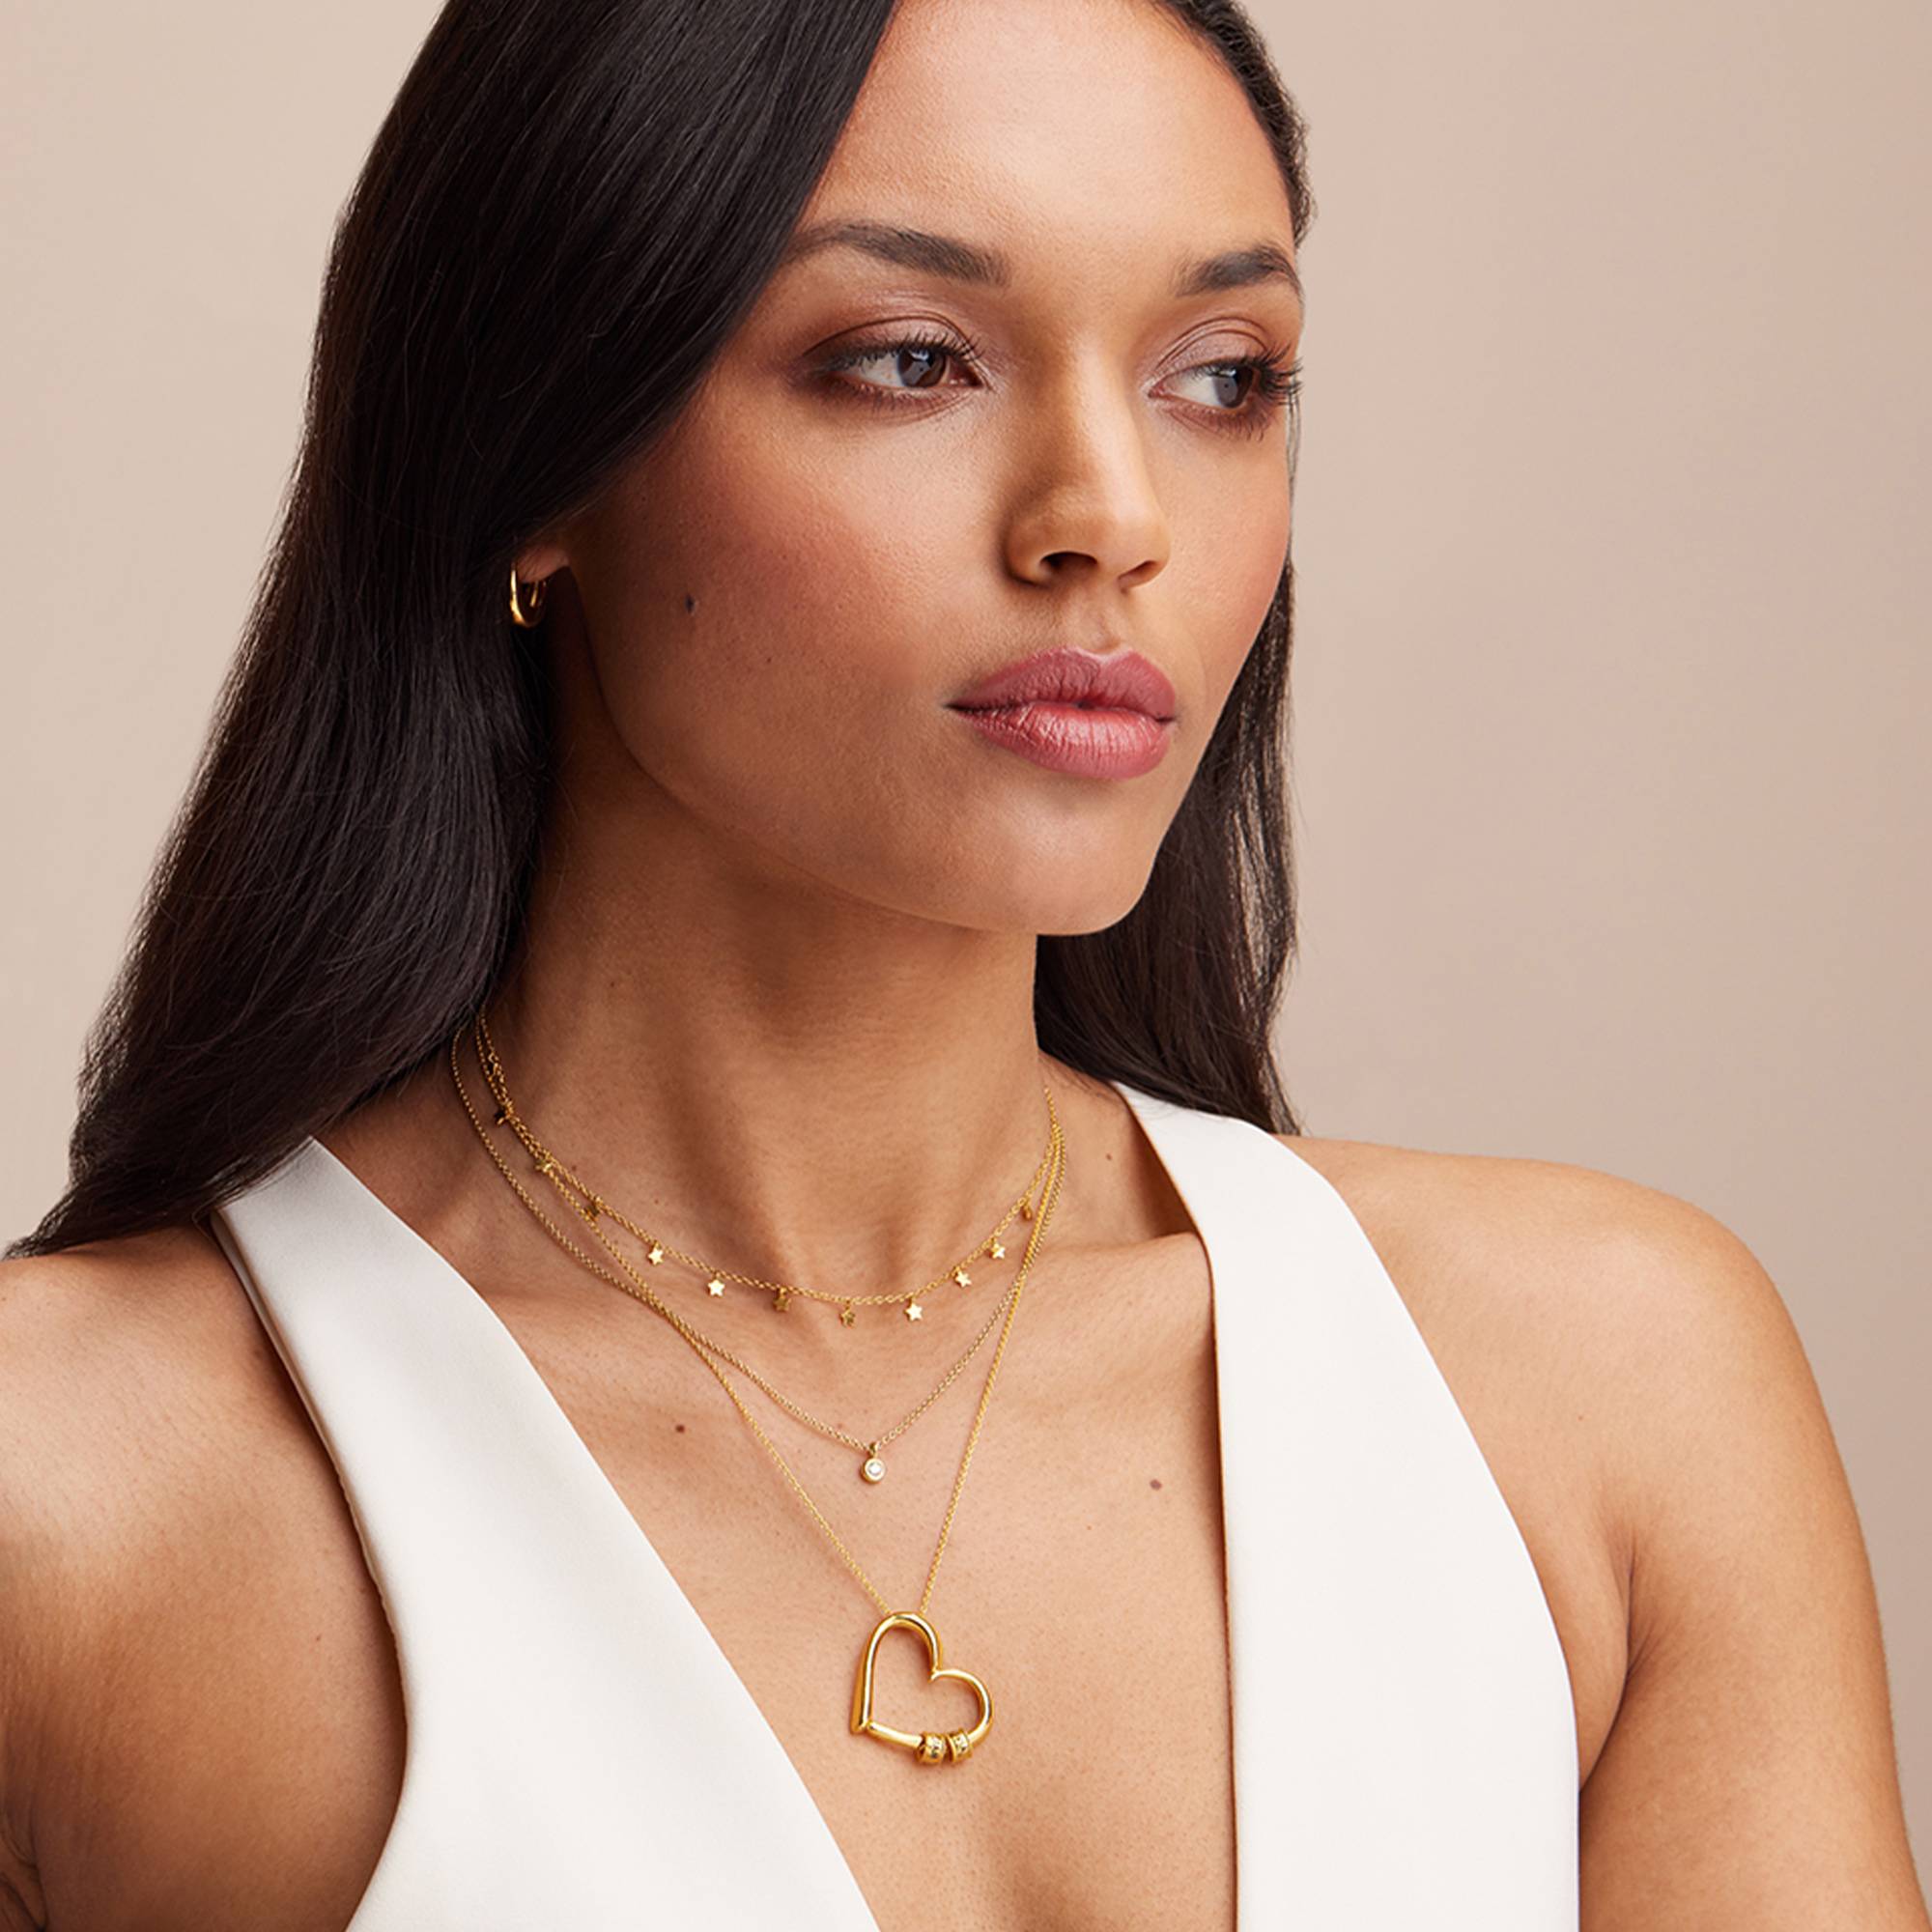 Charmante Herz-Halskette mit gravierten Beads - 750er Gold-Vermeil-4 Produktfoto